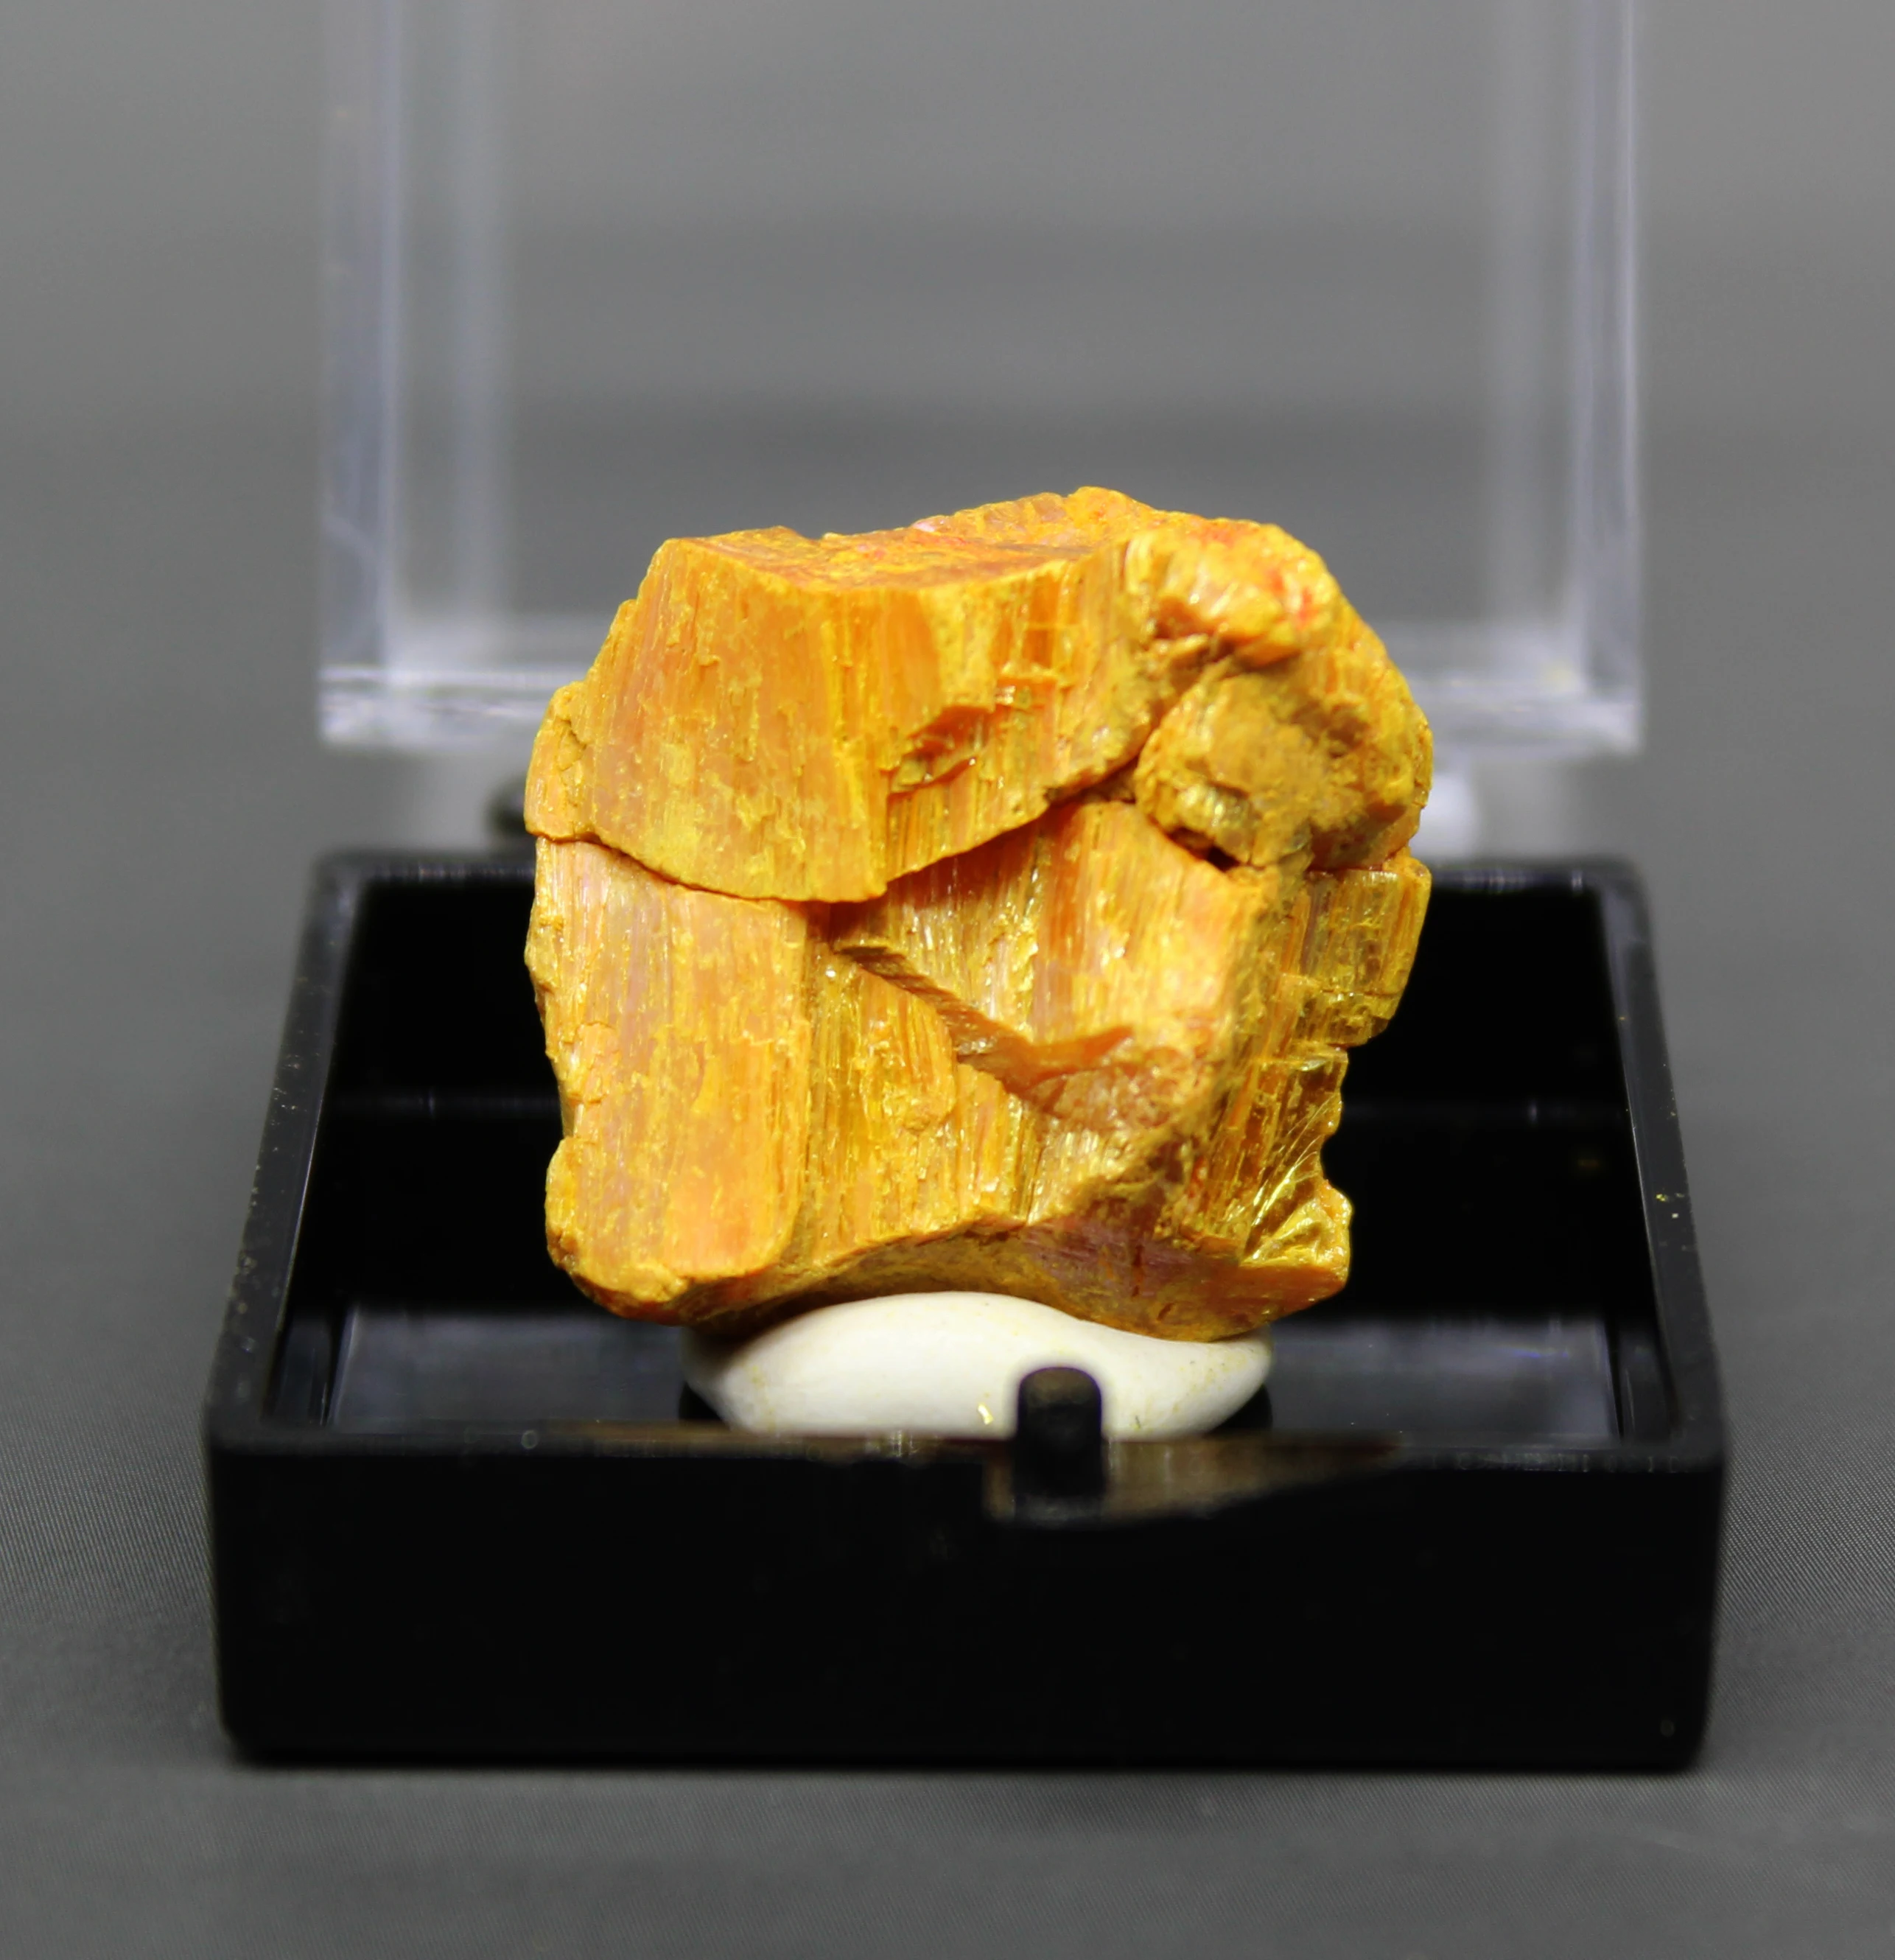 Naturlige orpiment Mineral prøver Arsen svovlholdigt malm Crystal mineral malm orpimentcollection prøver box størrelse 3.4 cm 3